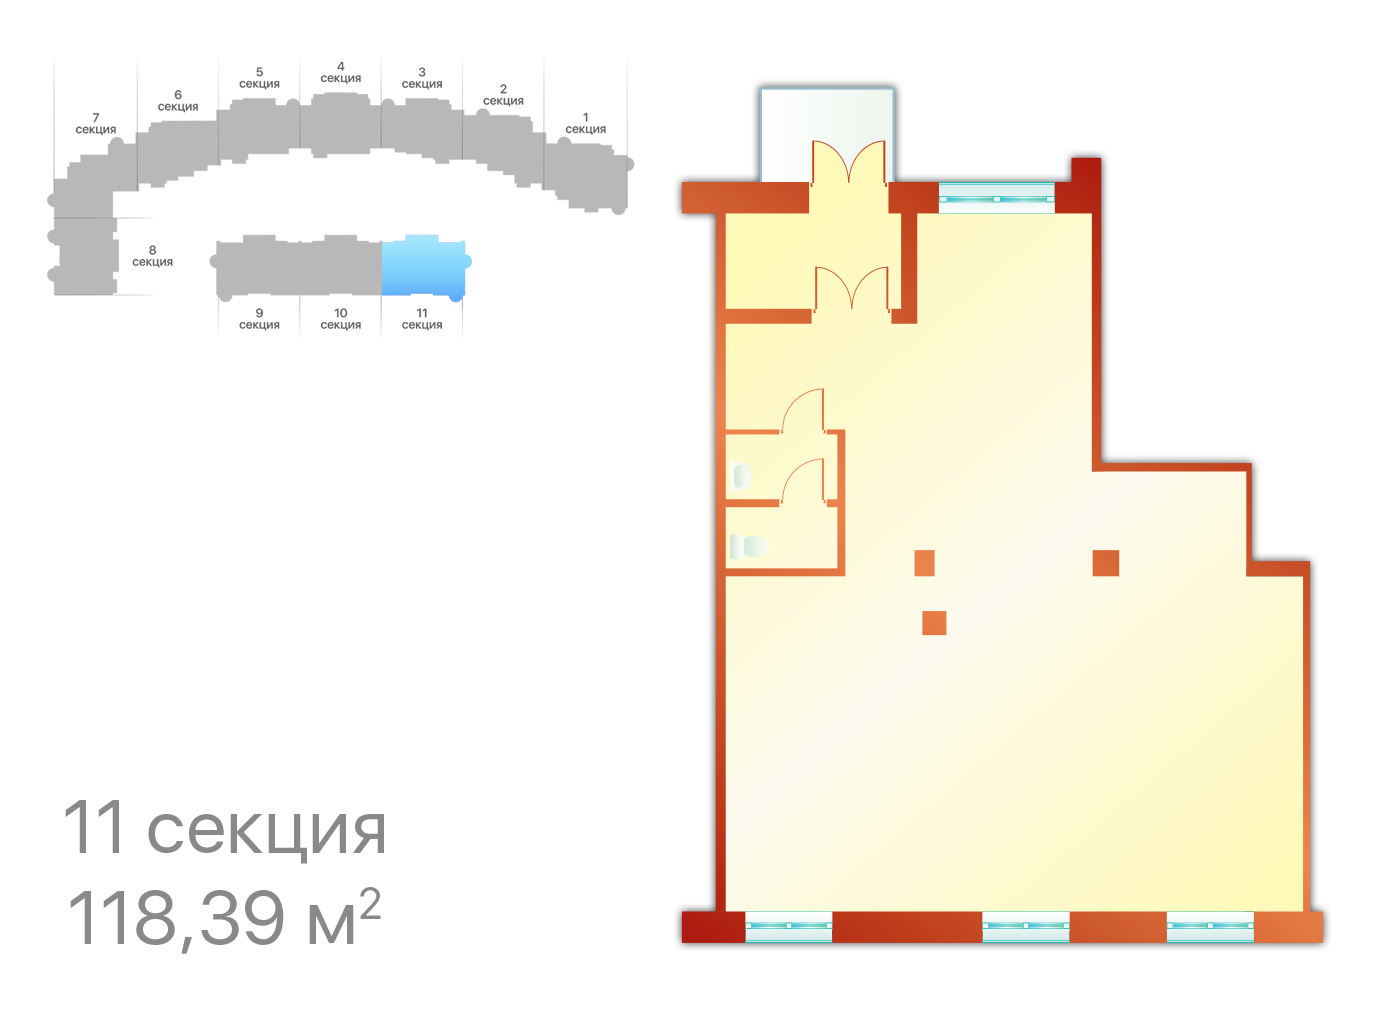 Секция 11, ЖК Шереметевский дворец, коммерческие помещения